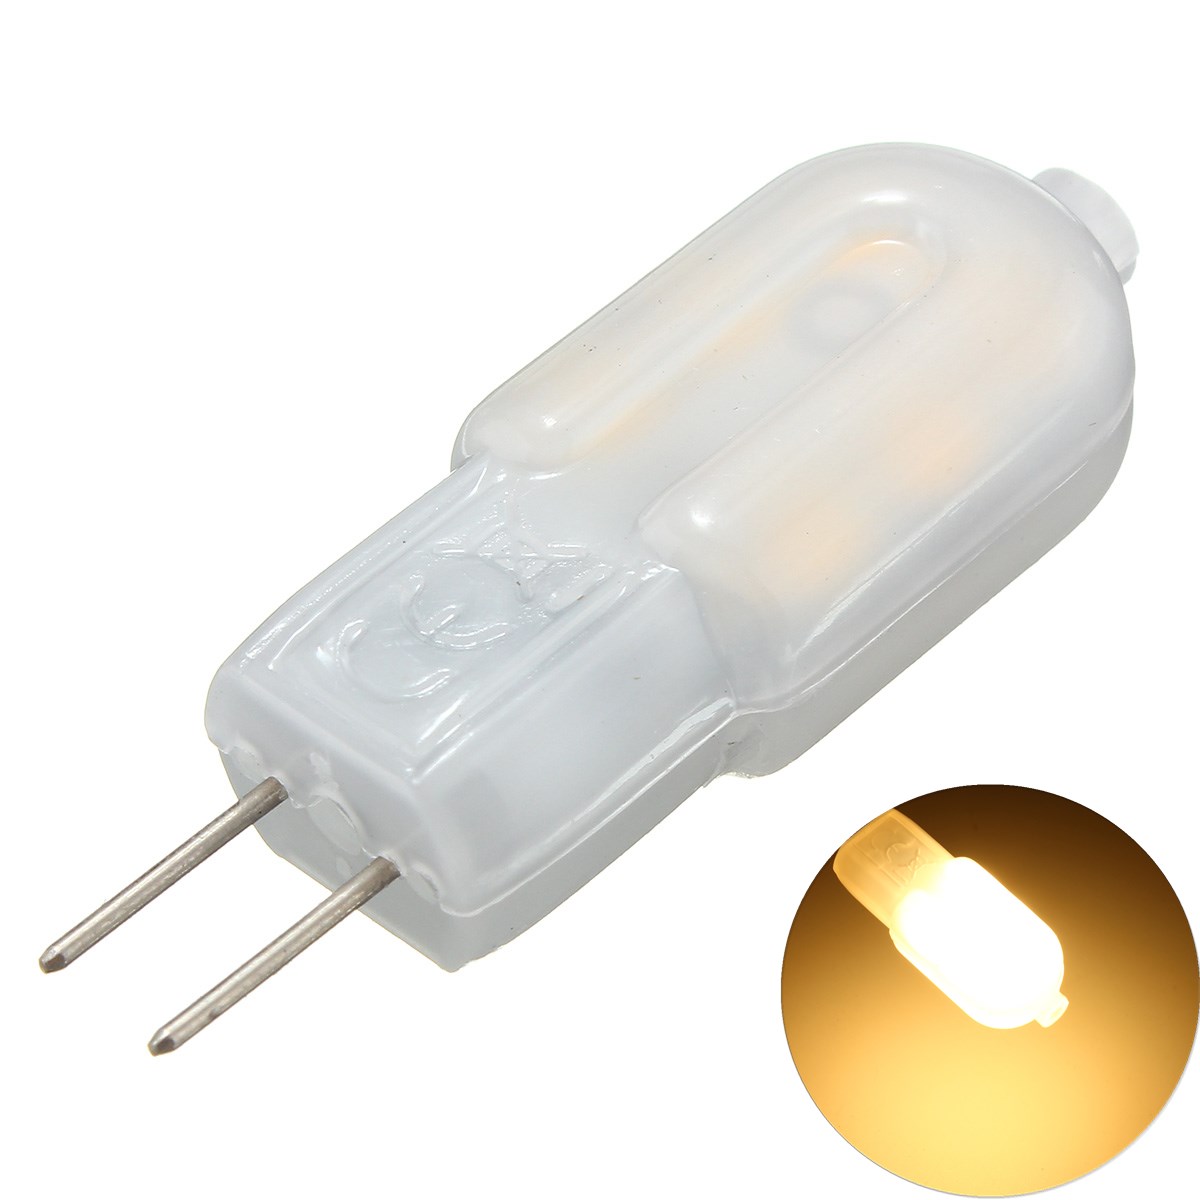 

6 ШТ. DC12V G4 2 Вт SMD2835 Нерегулируемый Теплый Белый Светодиодный Лампа для внутреннего Домашнего Декора